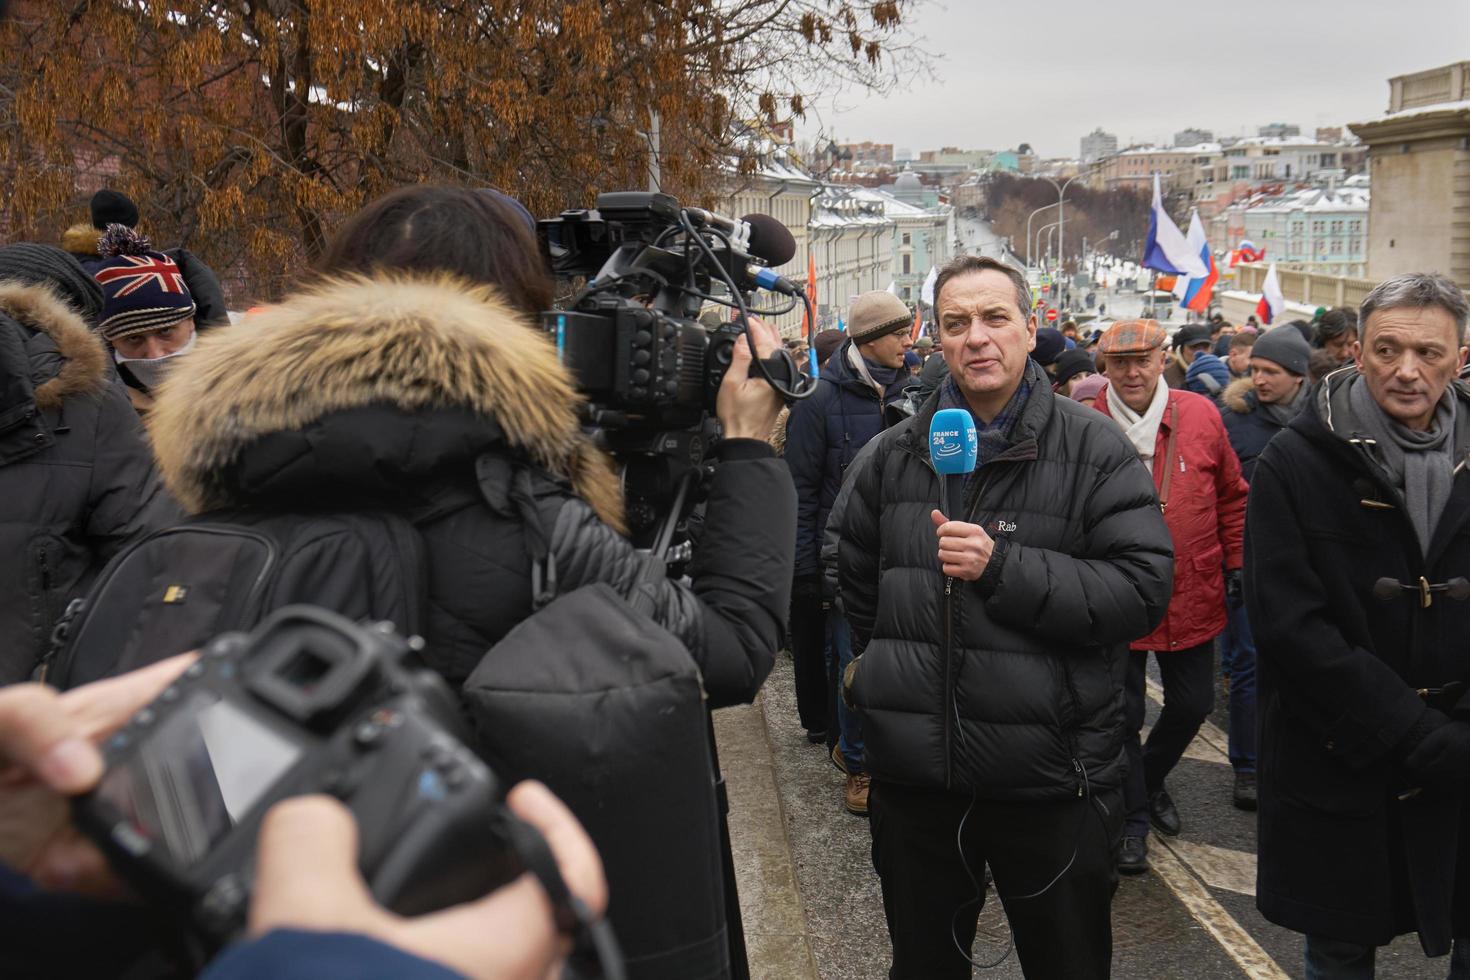 Moscou, Russie - 24 février 2019. Marche commémorative de nemtsov. un journaliste étranger avec un microphone rapporte de la scène à l'appareil photo numérique